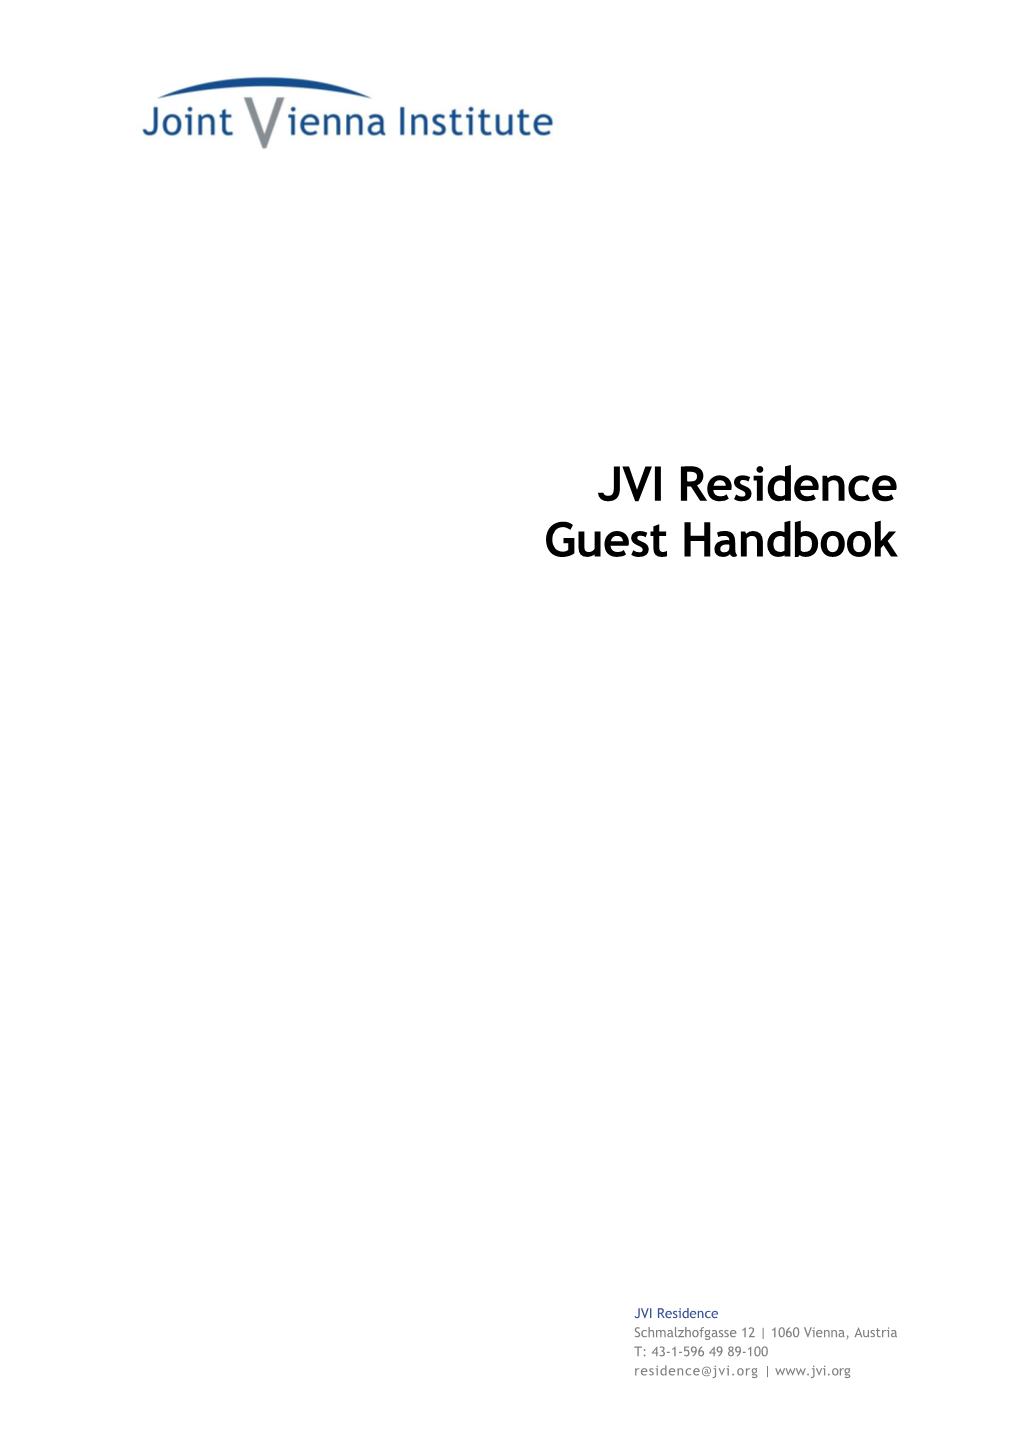 JVI Residence: Guest Handbook